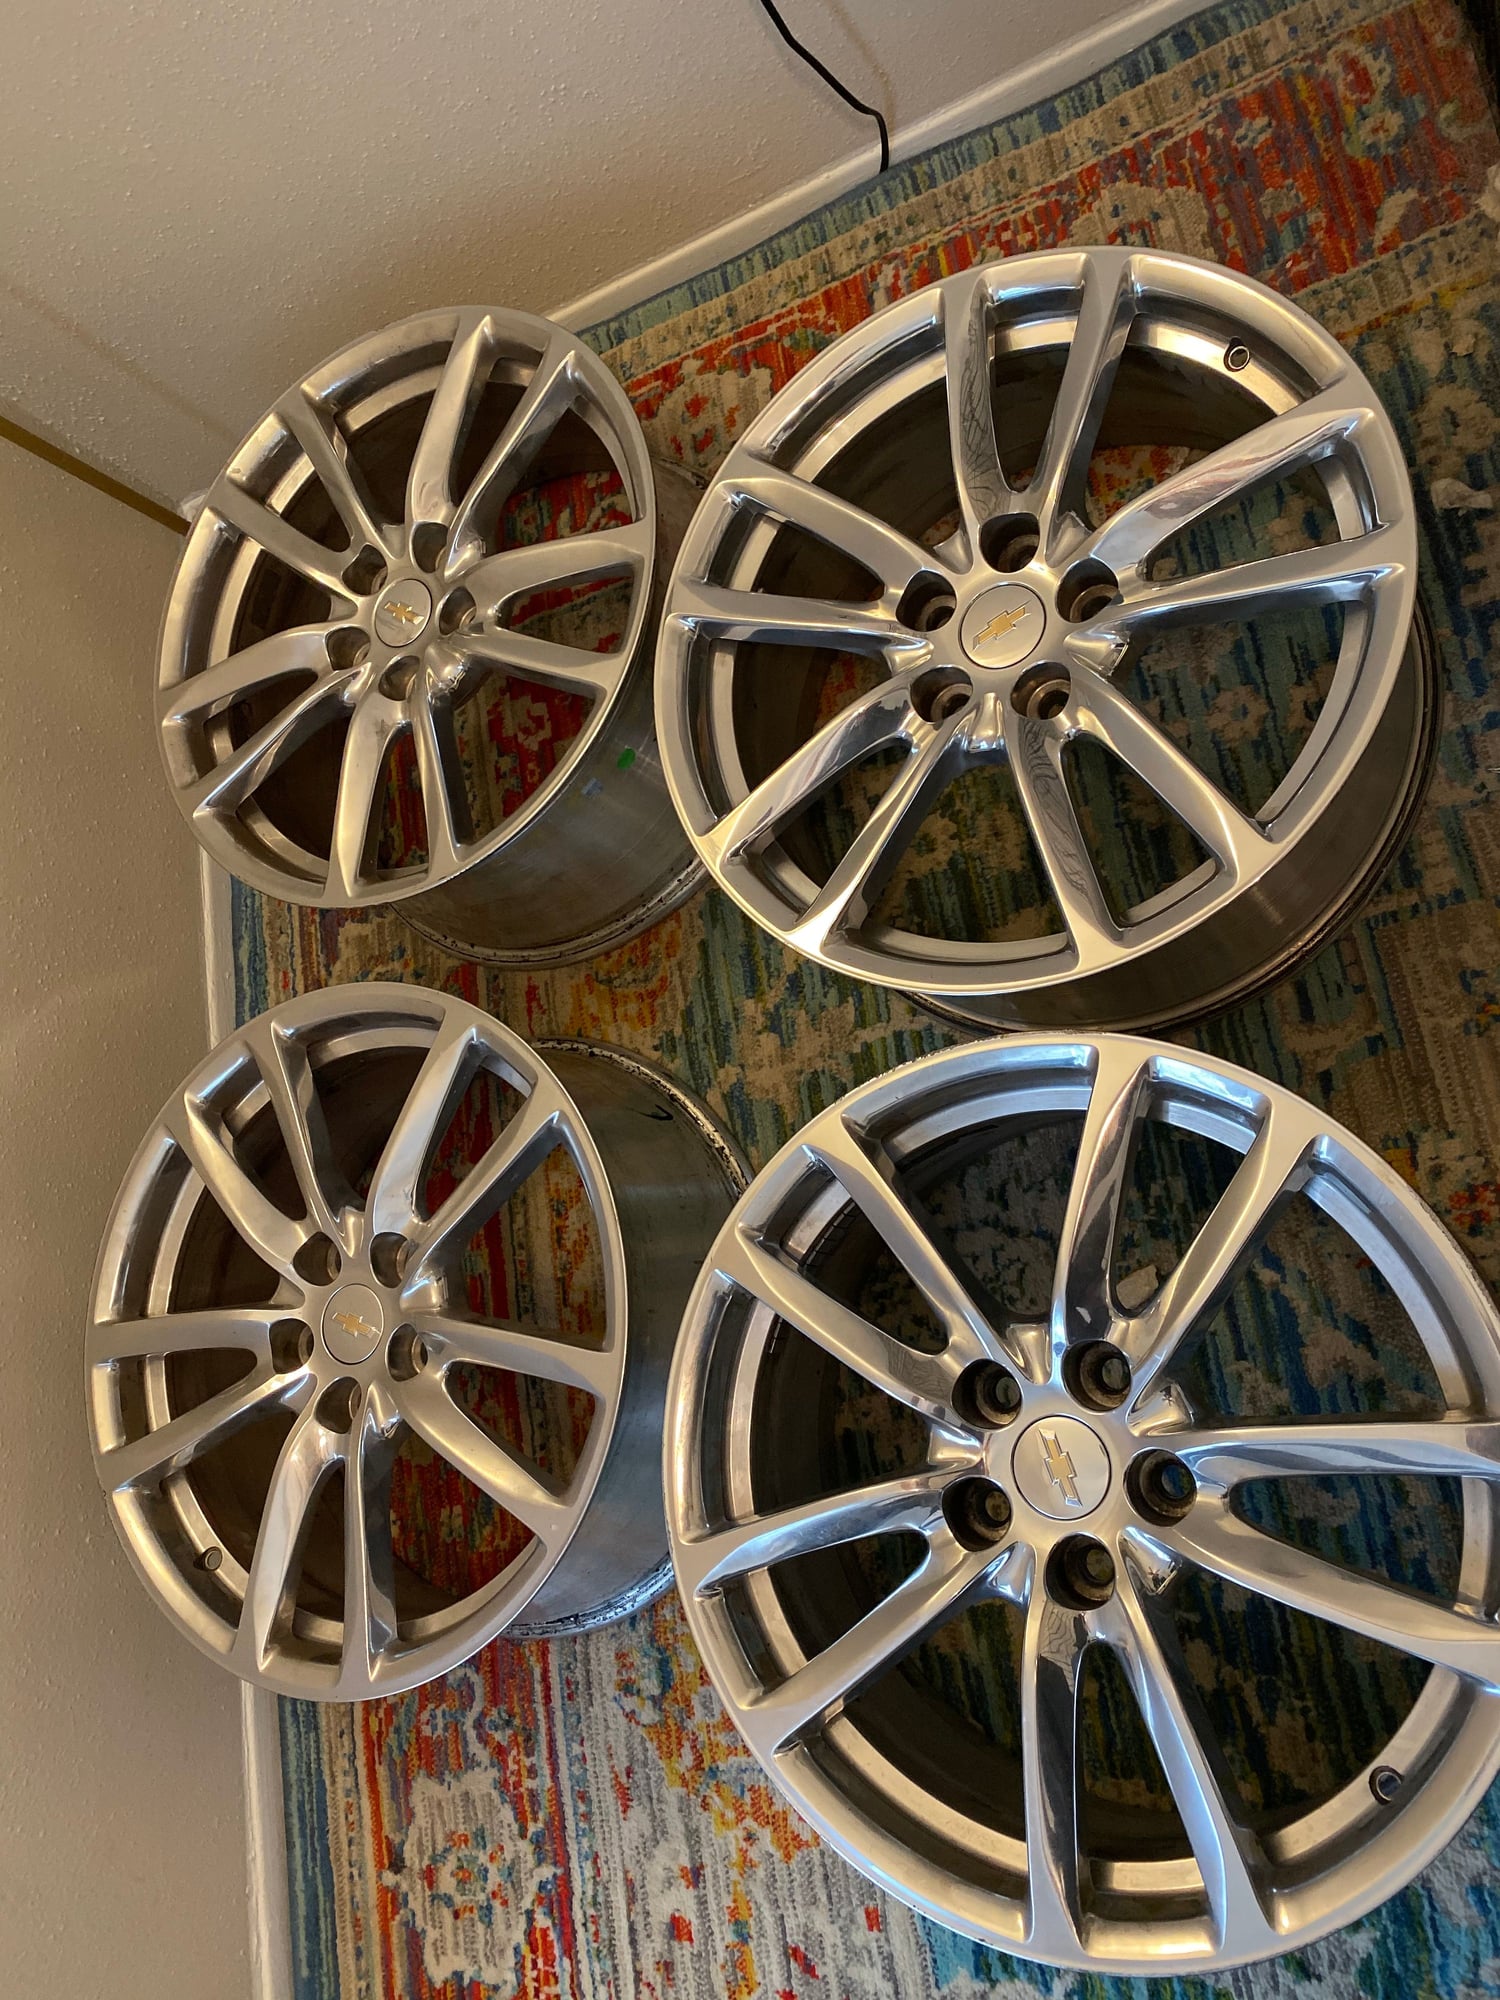  - Chevy ss wheels - Houston, TX 77450, United States